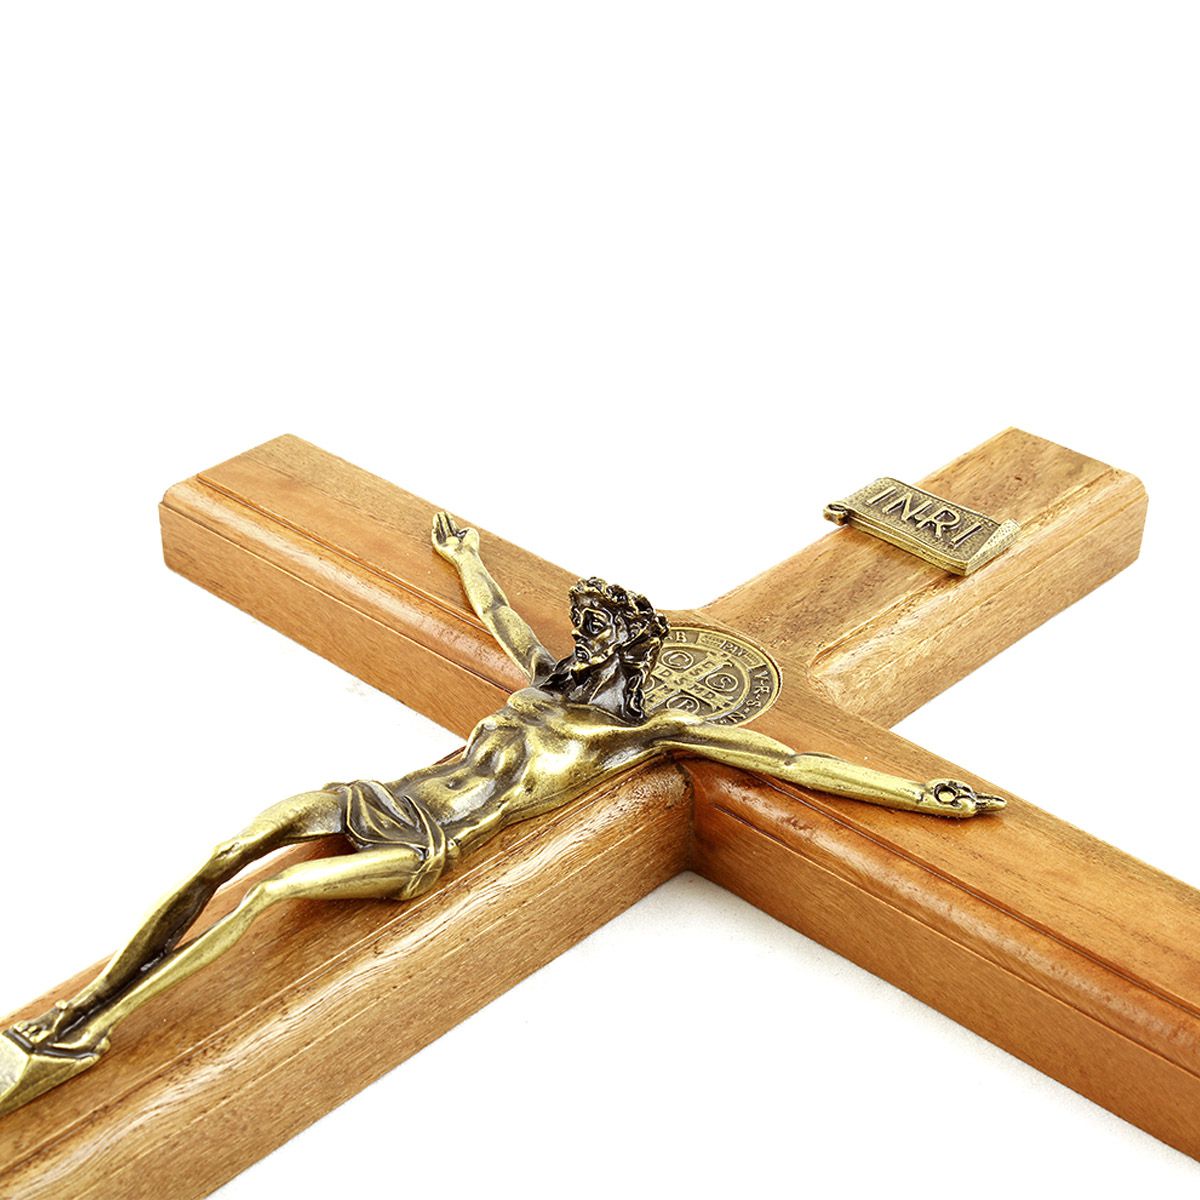 Crucifixo Tradicional Medalha São Bento para parede ou mesa 40cm OV